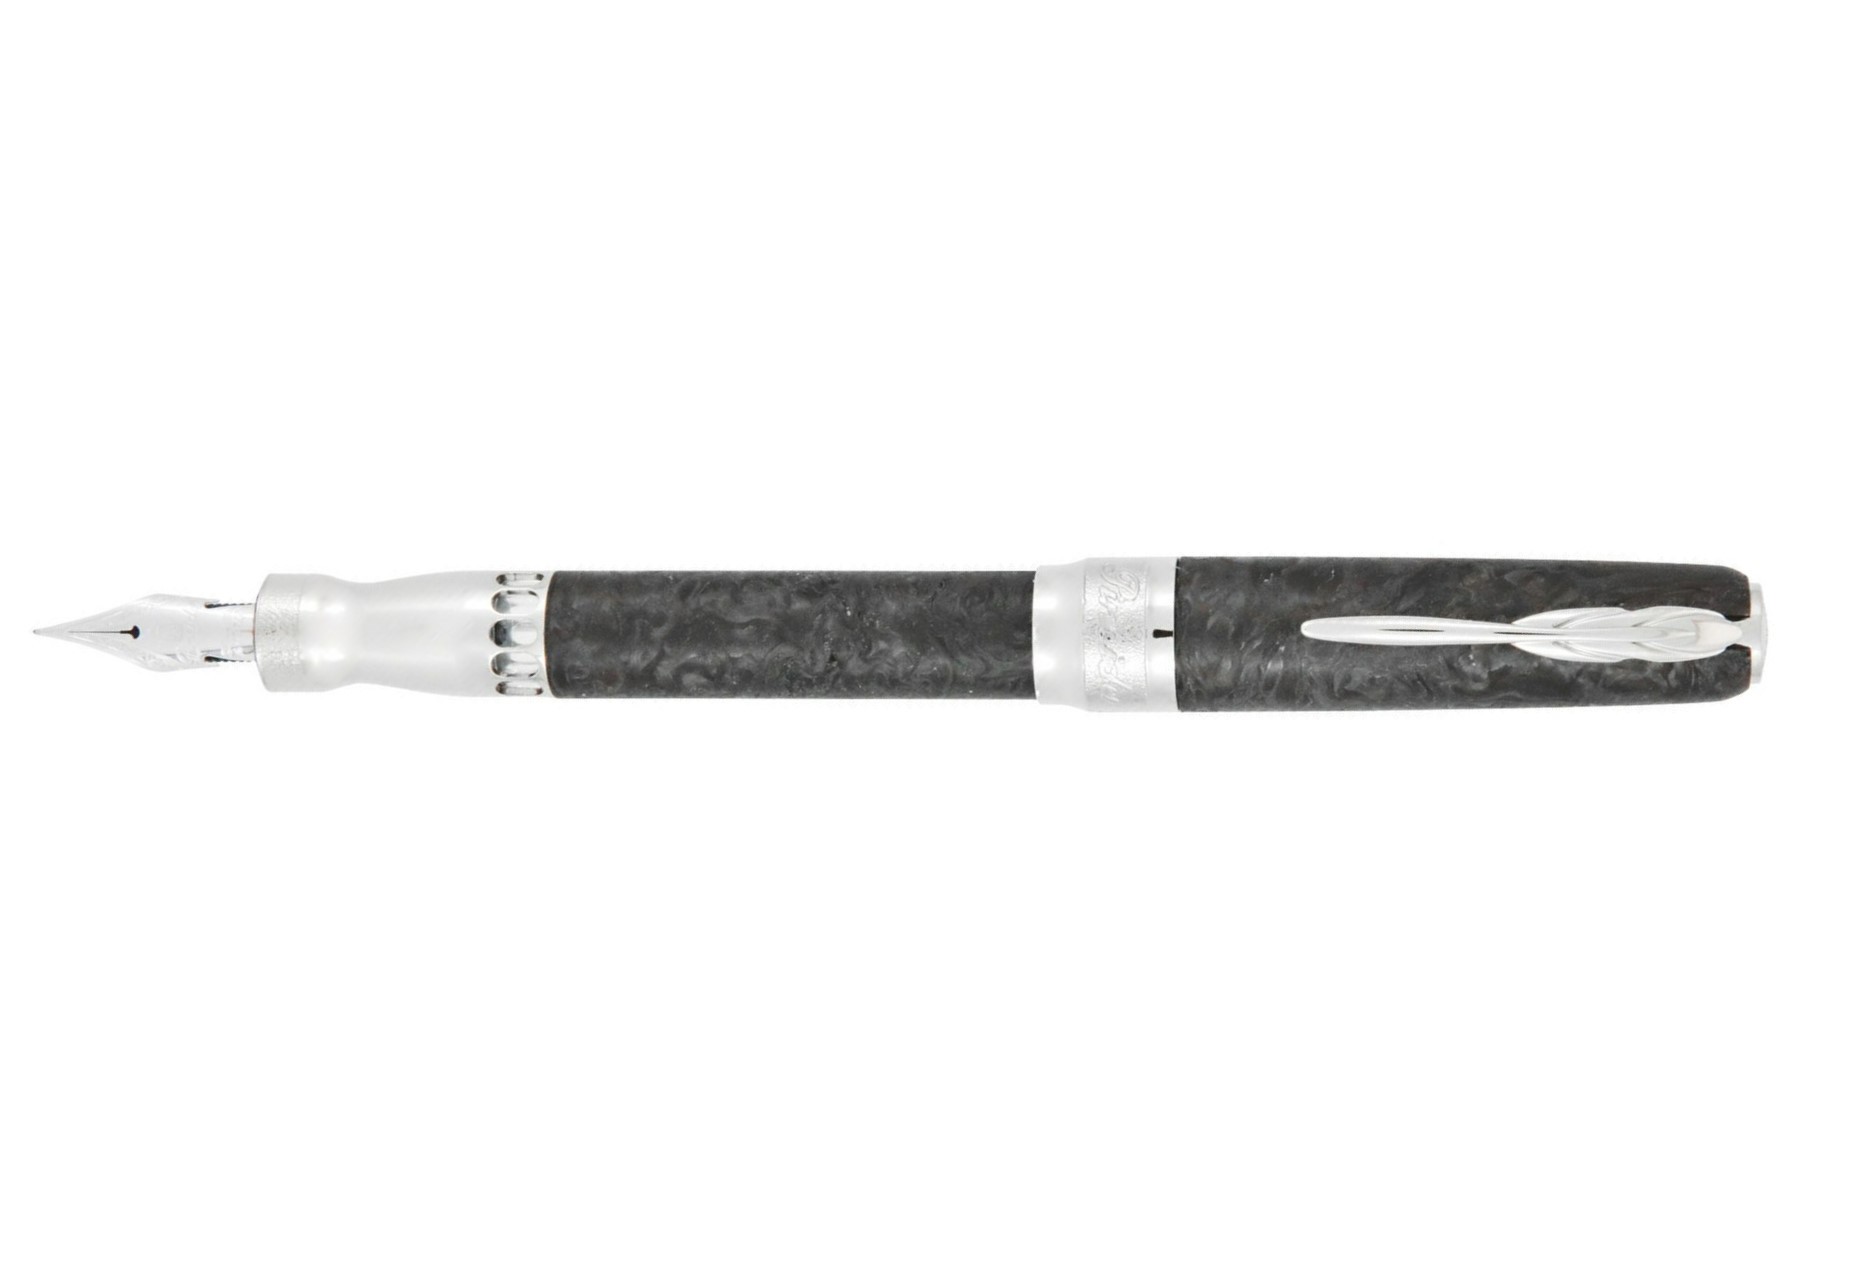 Pineider La Grande Bellezza Limited Edition Forged Carbon Fiber Fountain Pen